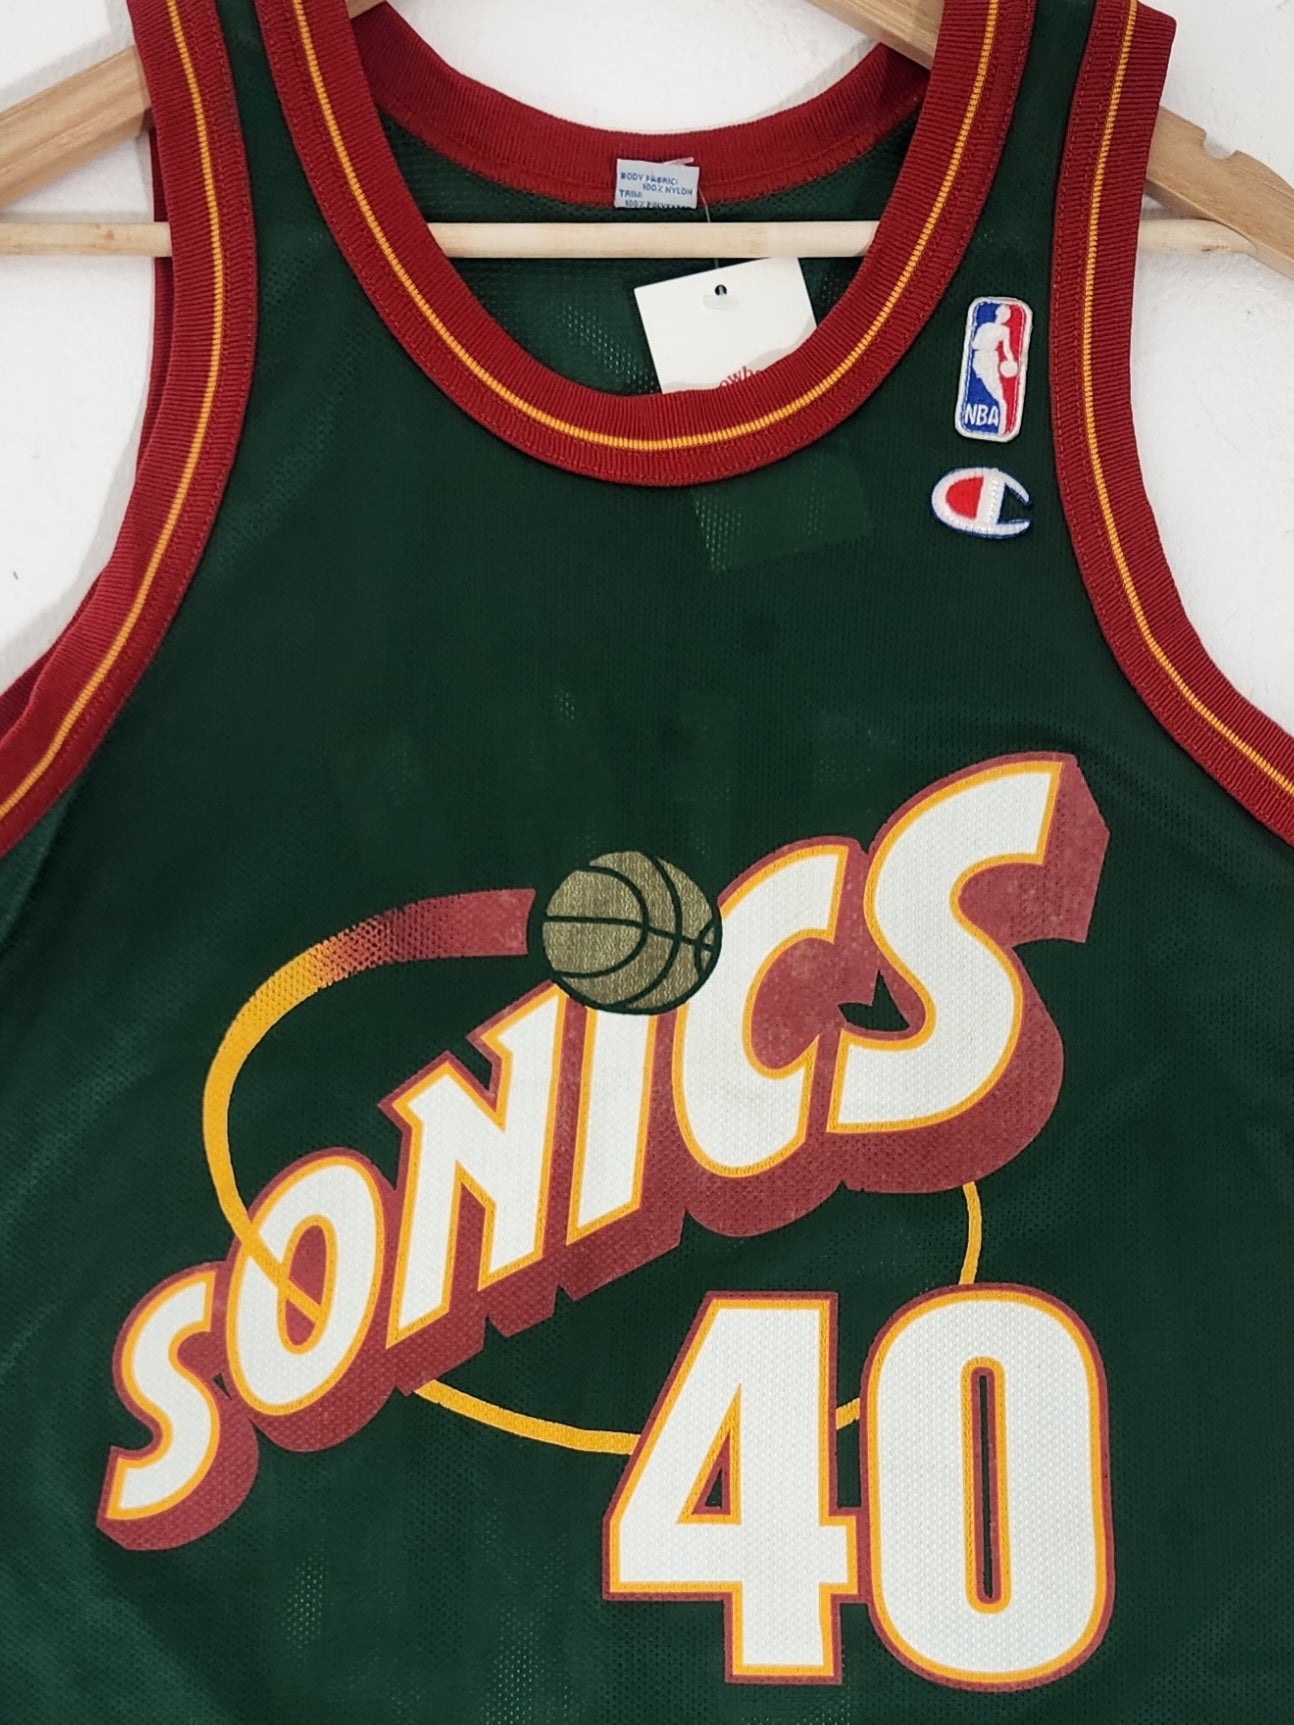 Basketball Jersey T shirt Seattle Sonics Shawn Kemp 40 NBA